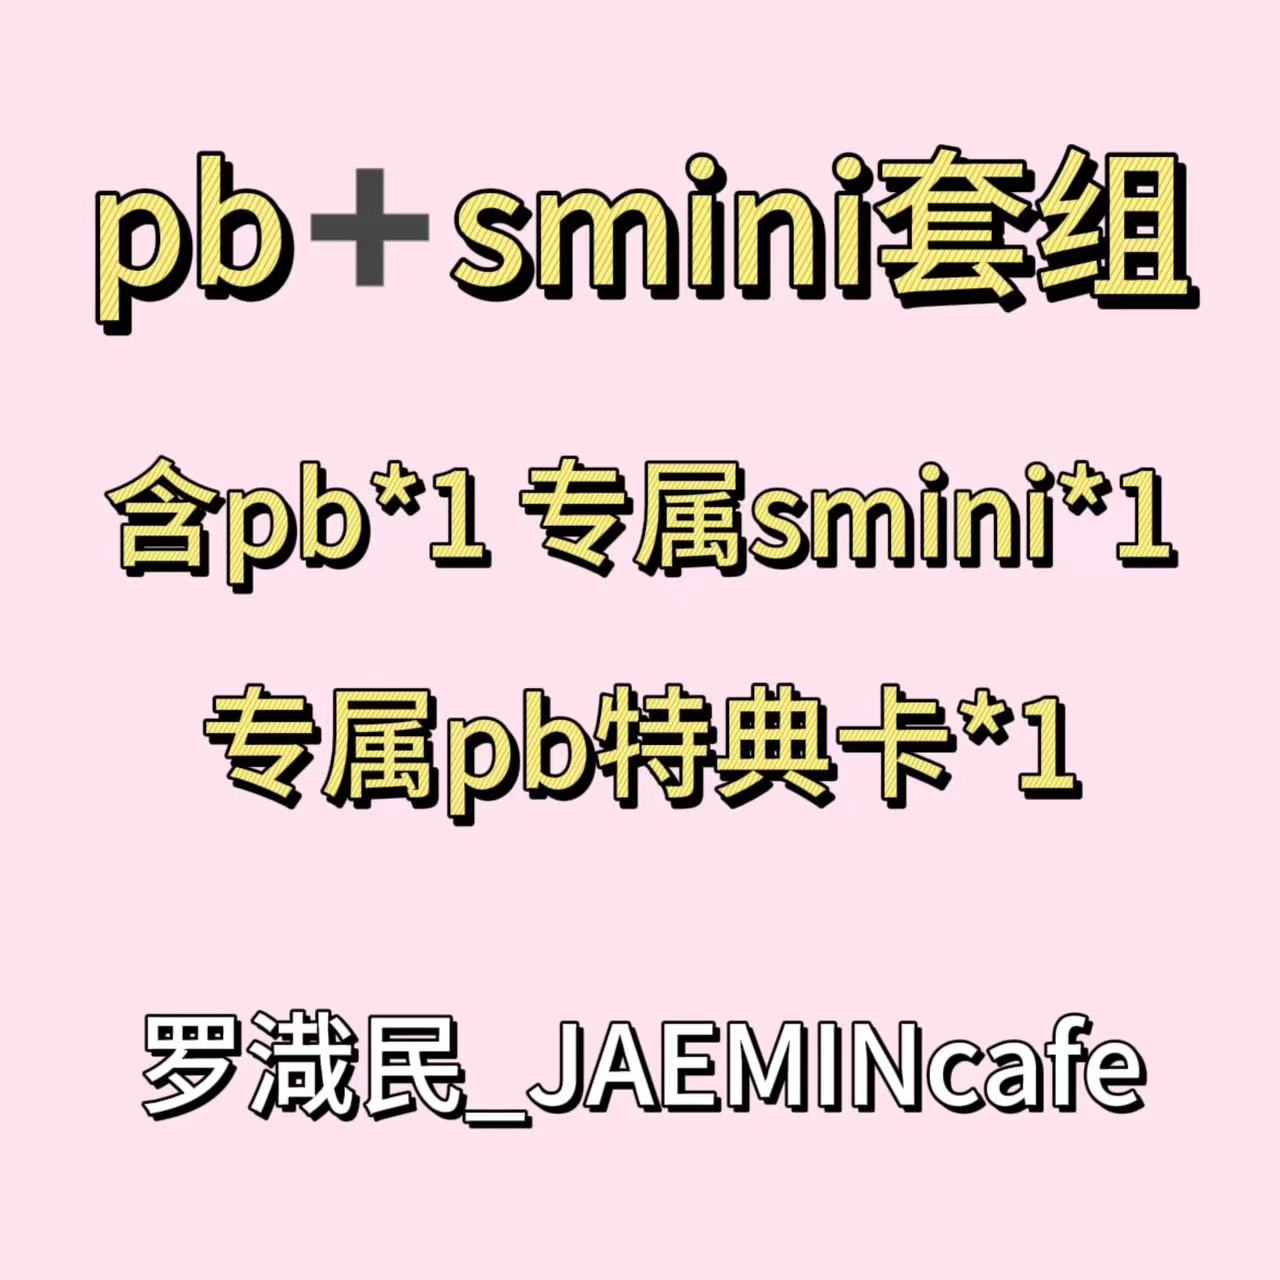 [全款 裸专] [JAEMINcafe专属链接] [Ktown4u特典赠送] [2CD 套装] NCT DREAM - [DREAM( )SCAPE] (Photobook Ver.)+(SMini Ver.) _罗渽民吧_JAEMINbar